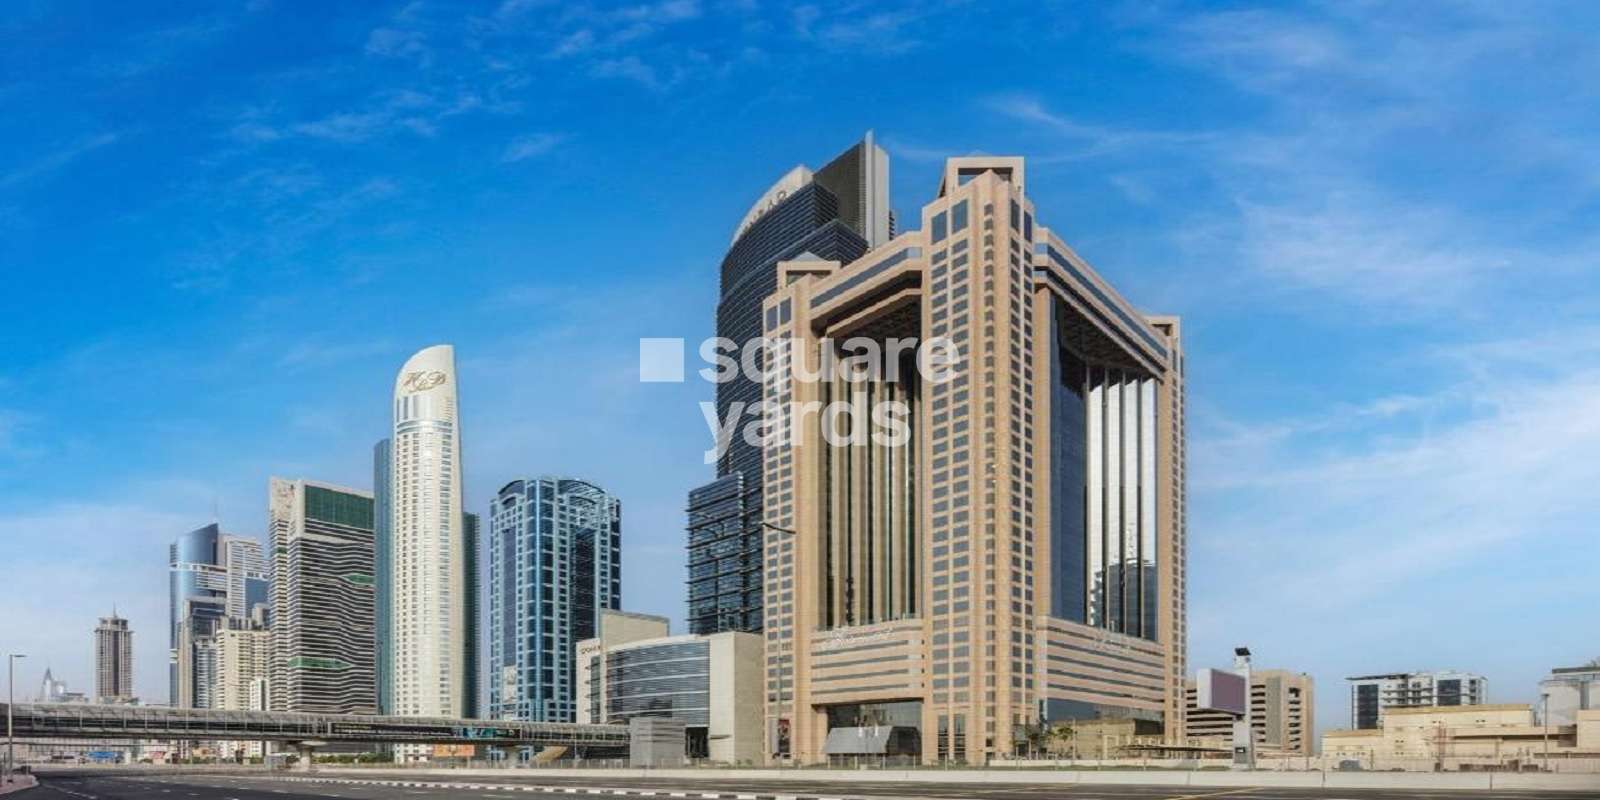 Accor The Fairmont Dubai Cover Image